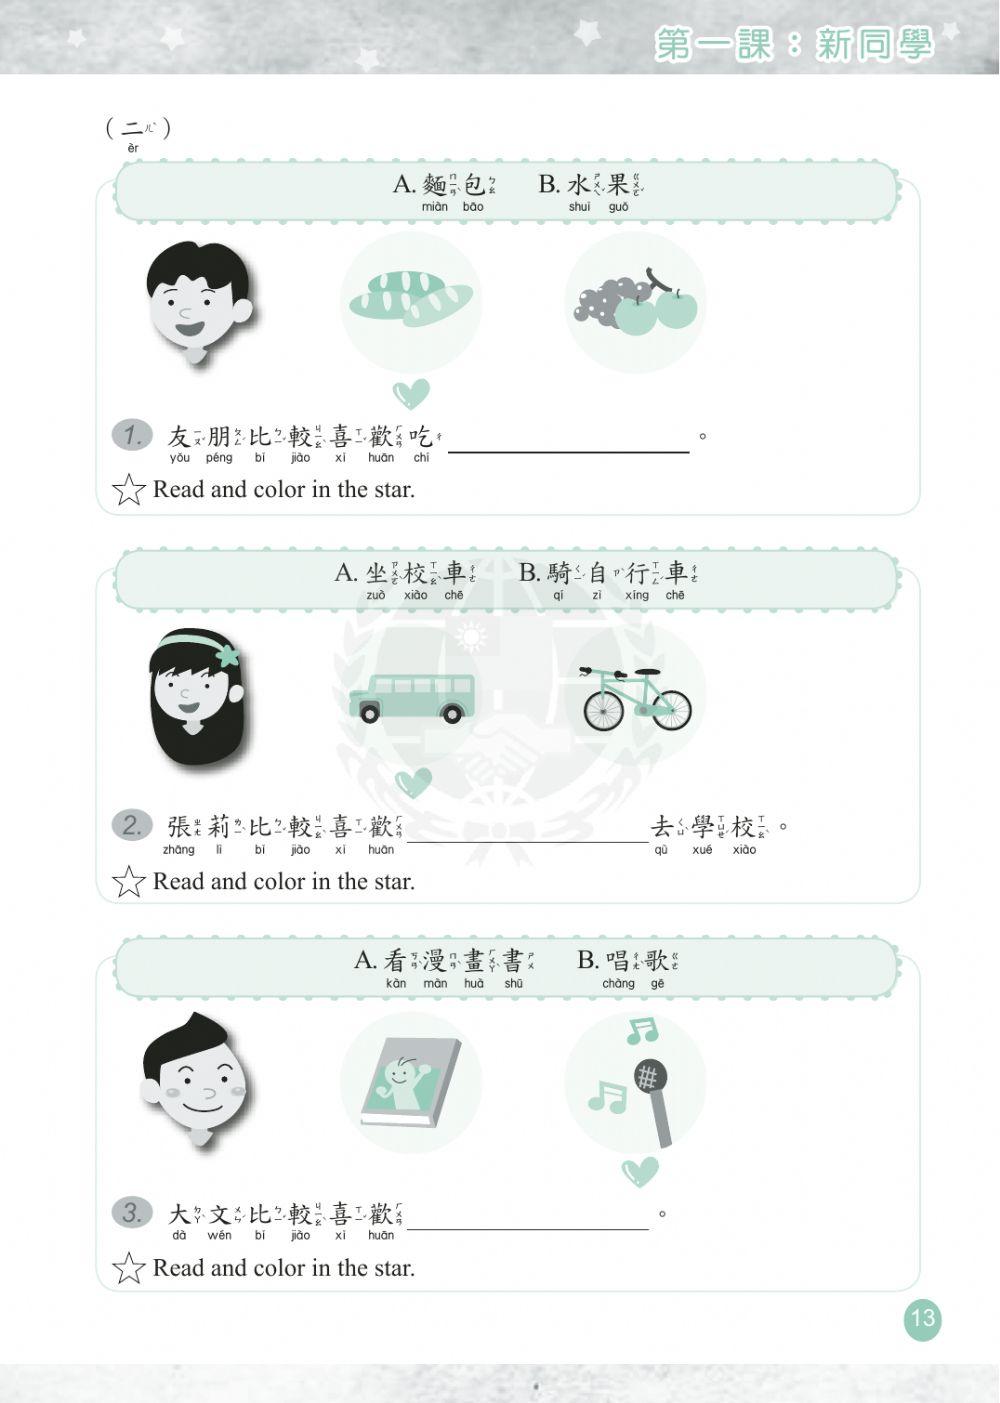 学华语向前走第二册第一课